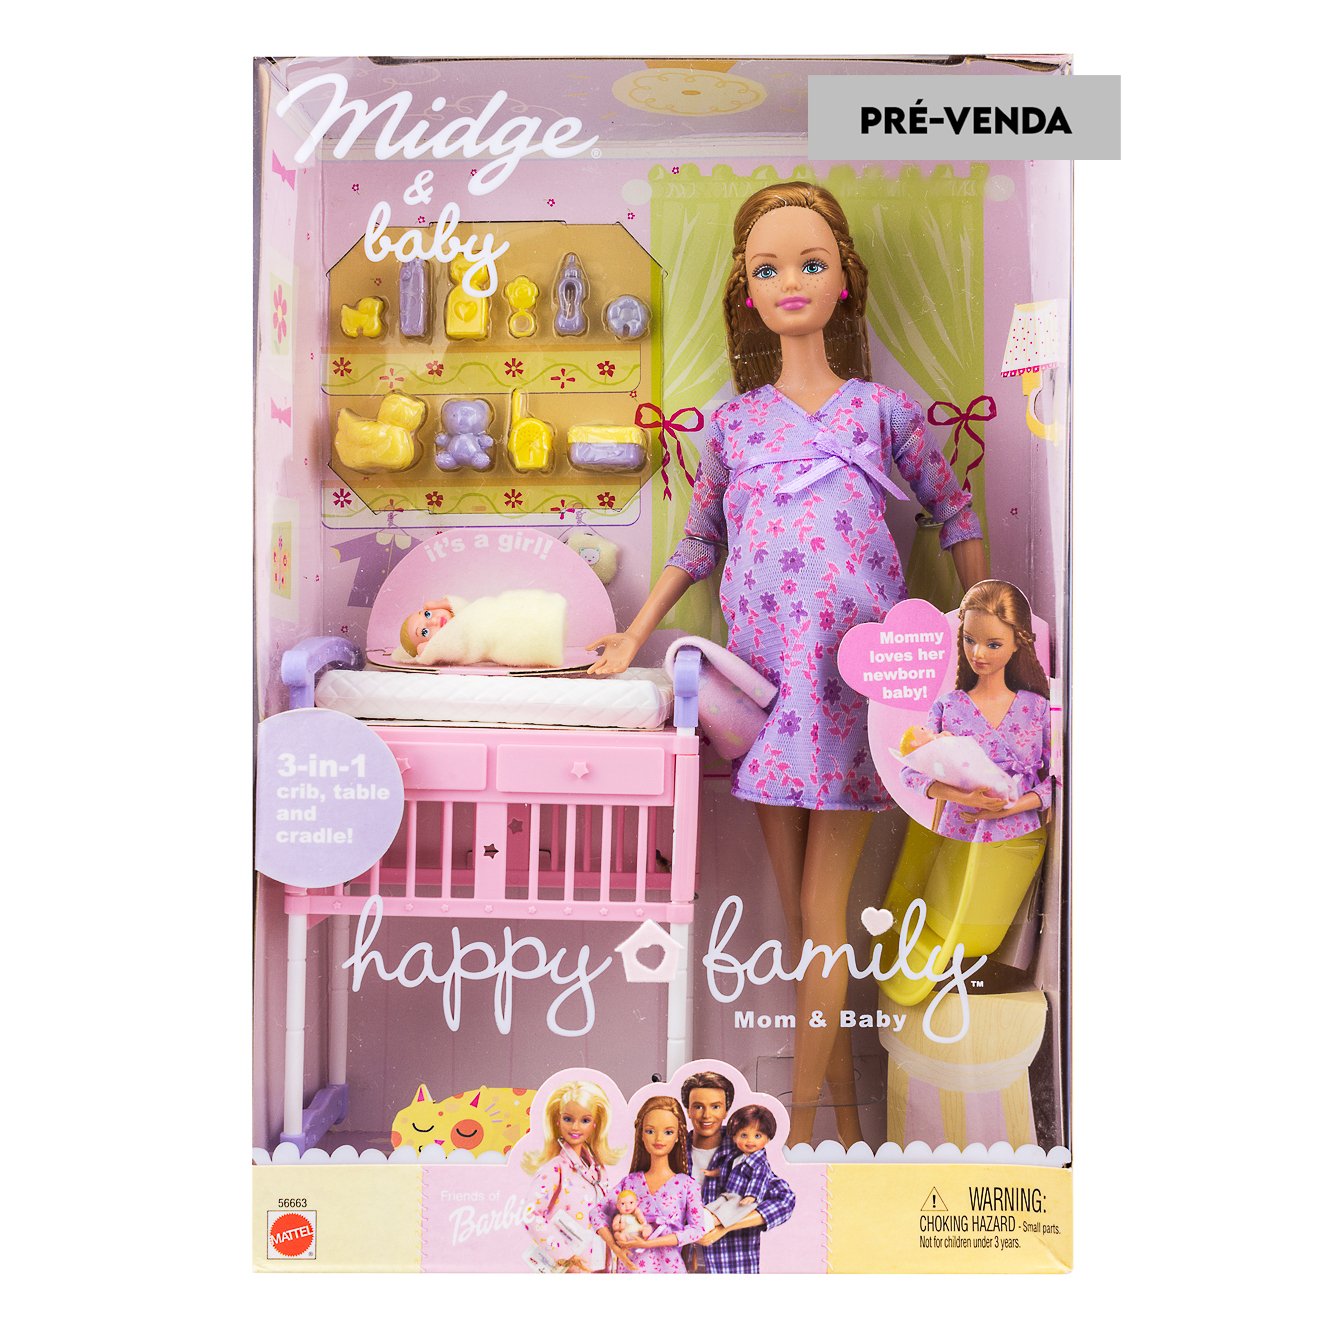 Danih-ela puxa o bonde on X: @LucasPirat A única linha oficial da Barbie  grávida, é a Barbie Happy Family, de meados dos anos 2000! (eu sei porque  tenho tudo dessa kkkkkkkkk até